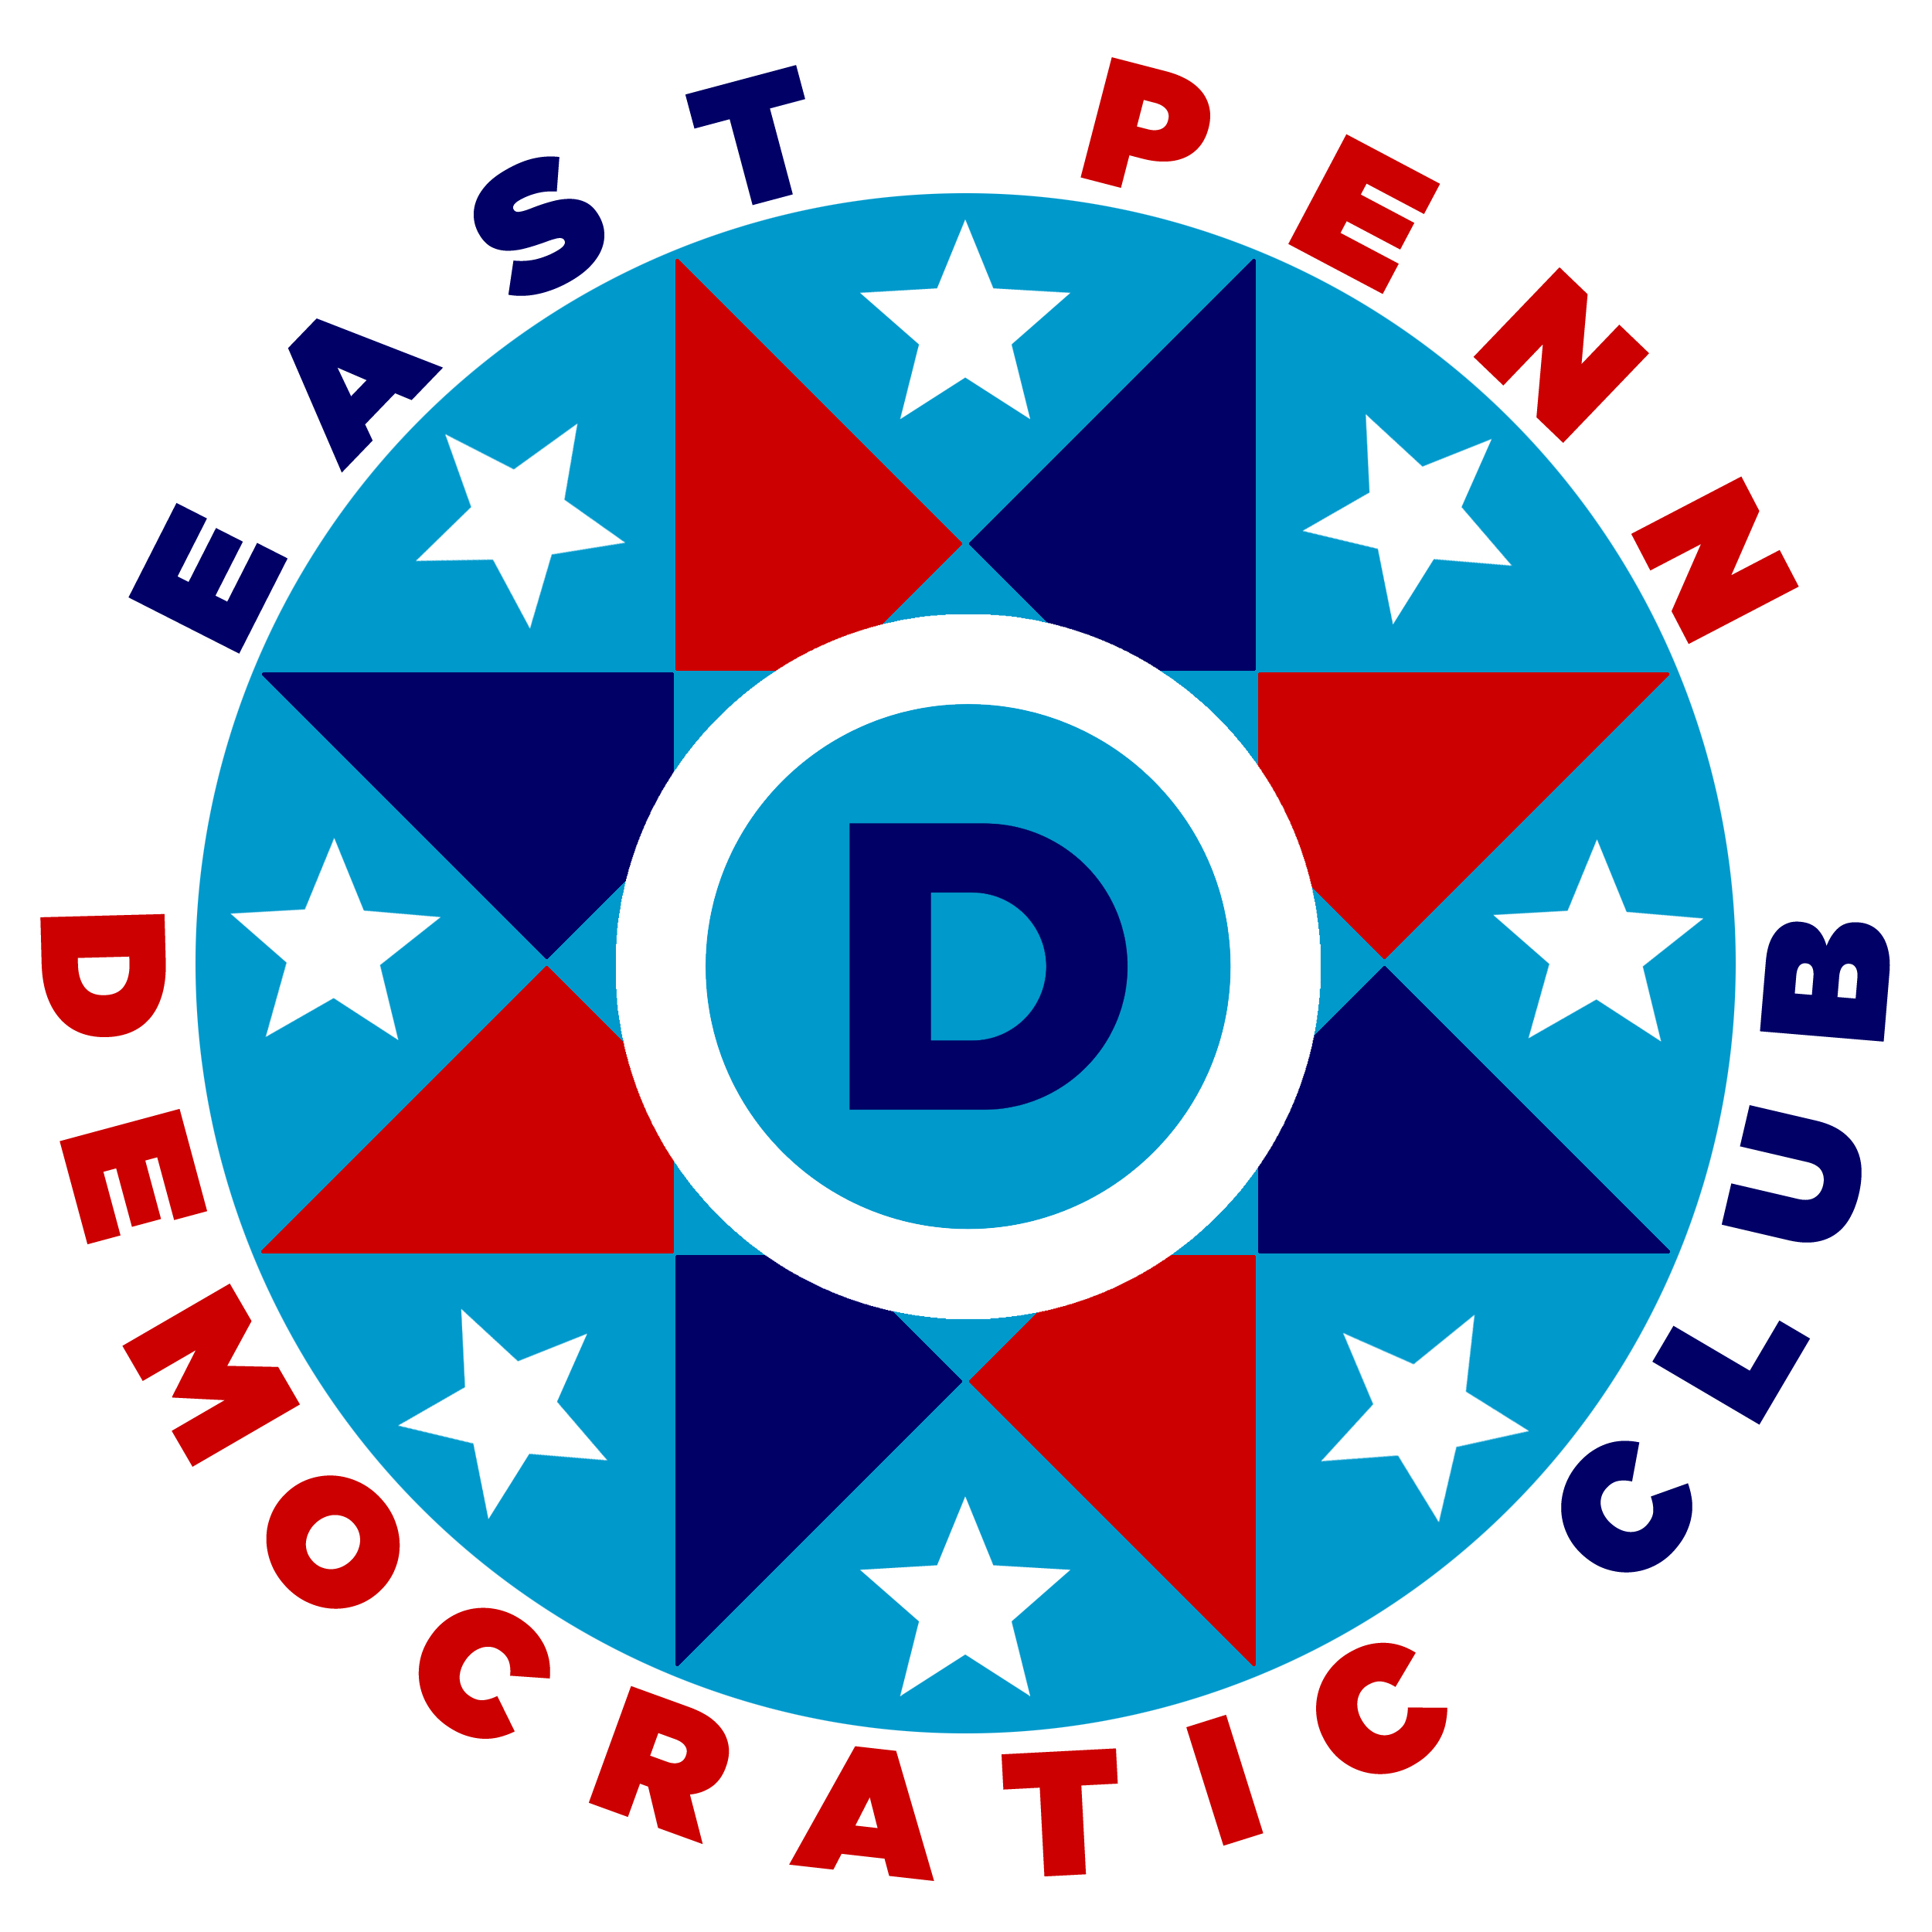 East Penn Democratic Club Monthly Meetings